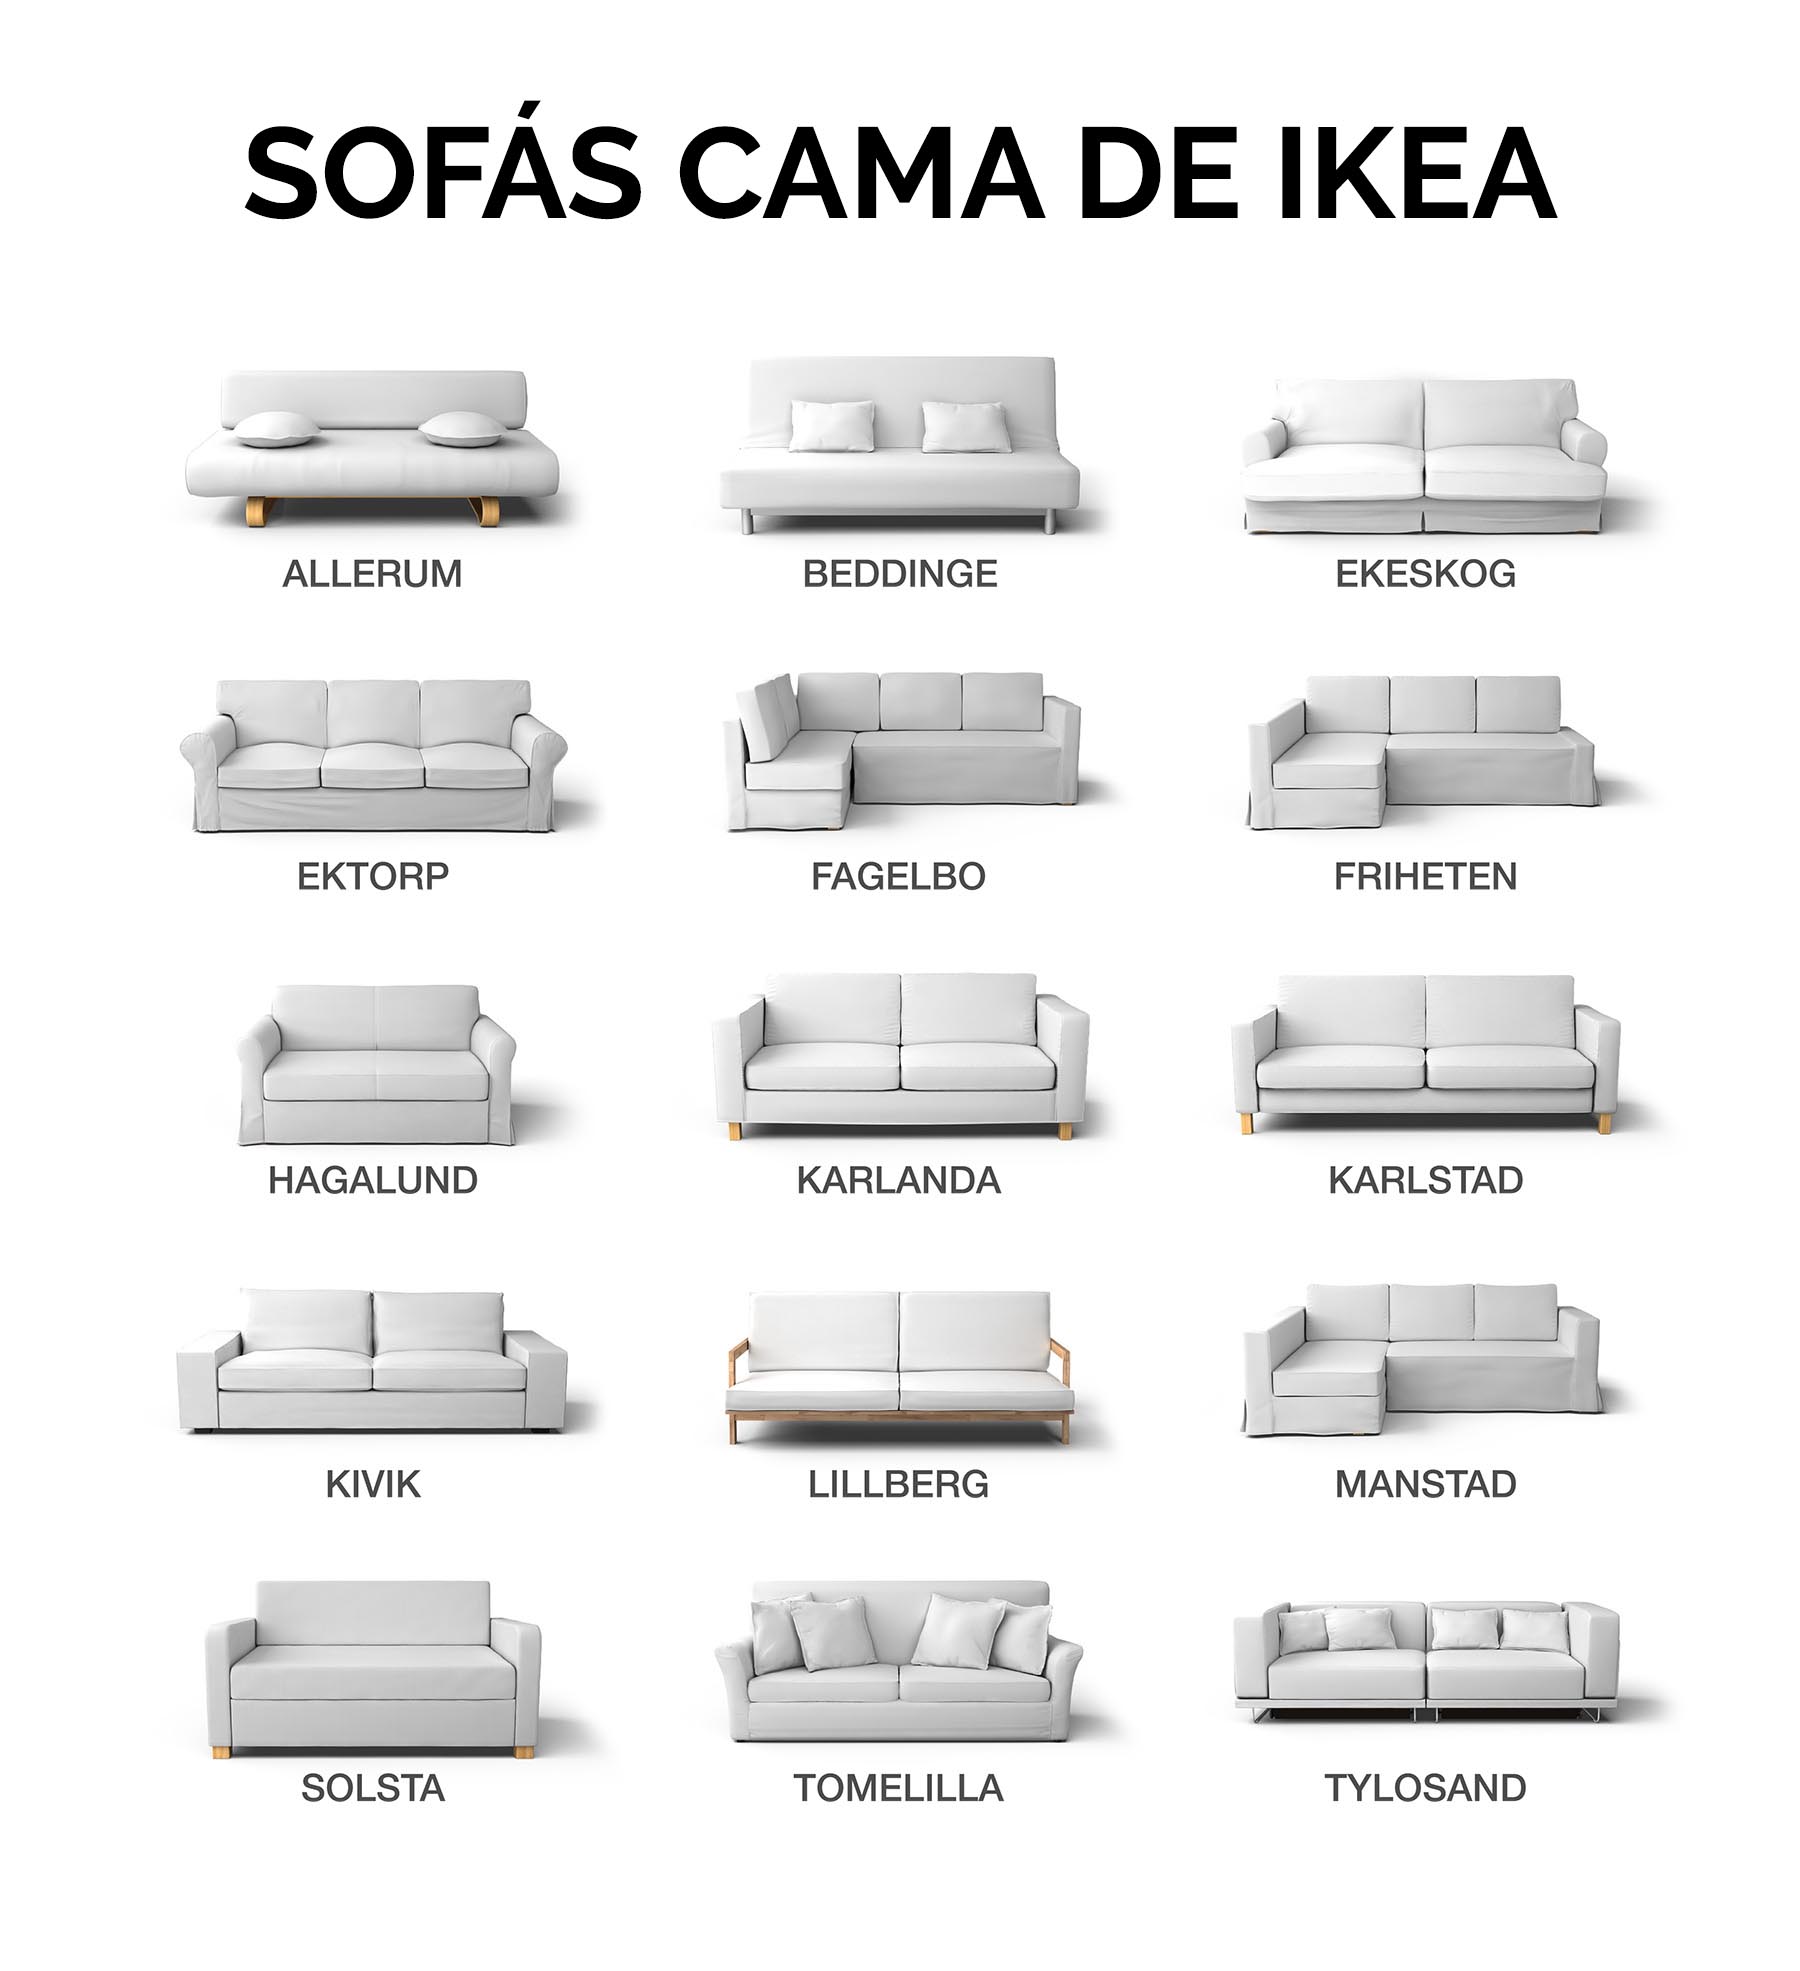 Género Platillo fuegos artificiales Qué modelo de sofá cama IKEA tengo? - Identifica tu sofá cama IKEA | Blog  Comfort Works - Inspiración y decoración